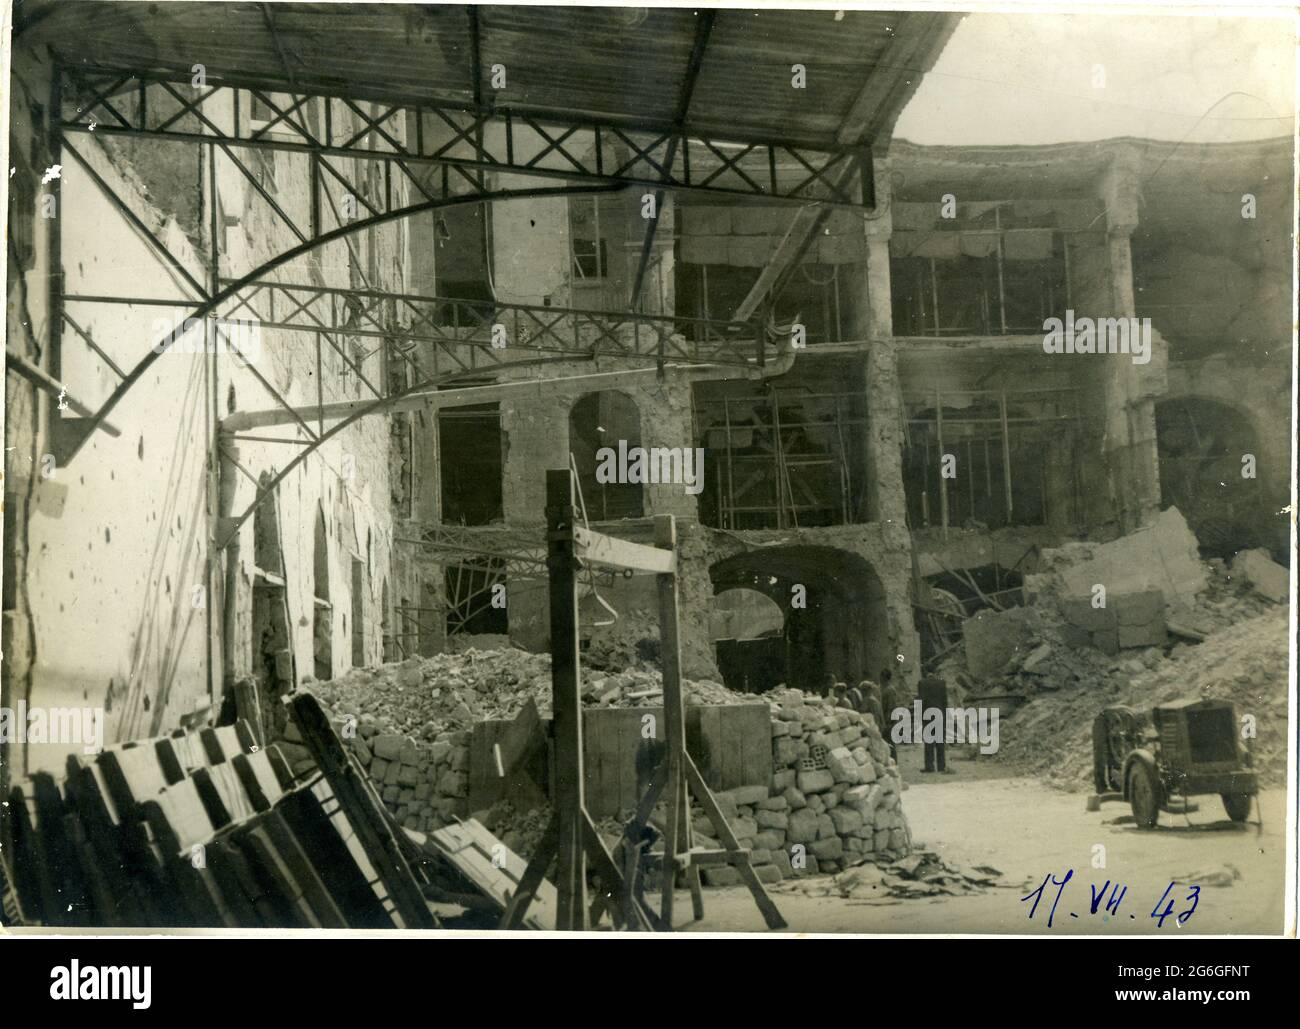 Seconda Guerra Mondiale - napoli italia - centro storico - borgo loreto distrutto dai bombardamenti, napoli, campania, italia 17 - agosto -1943 Foto Stock